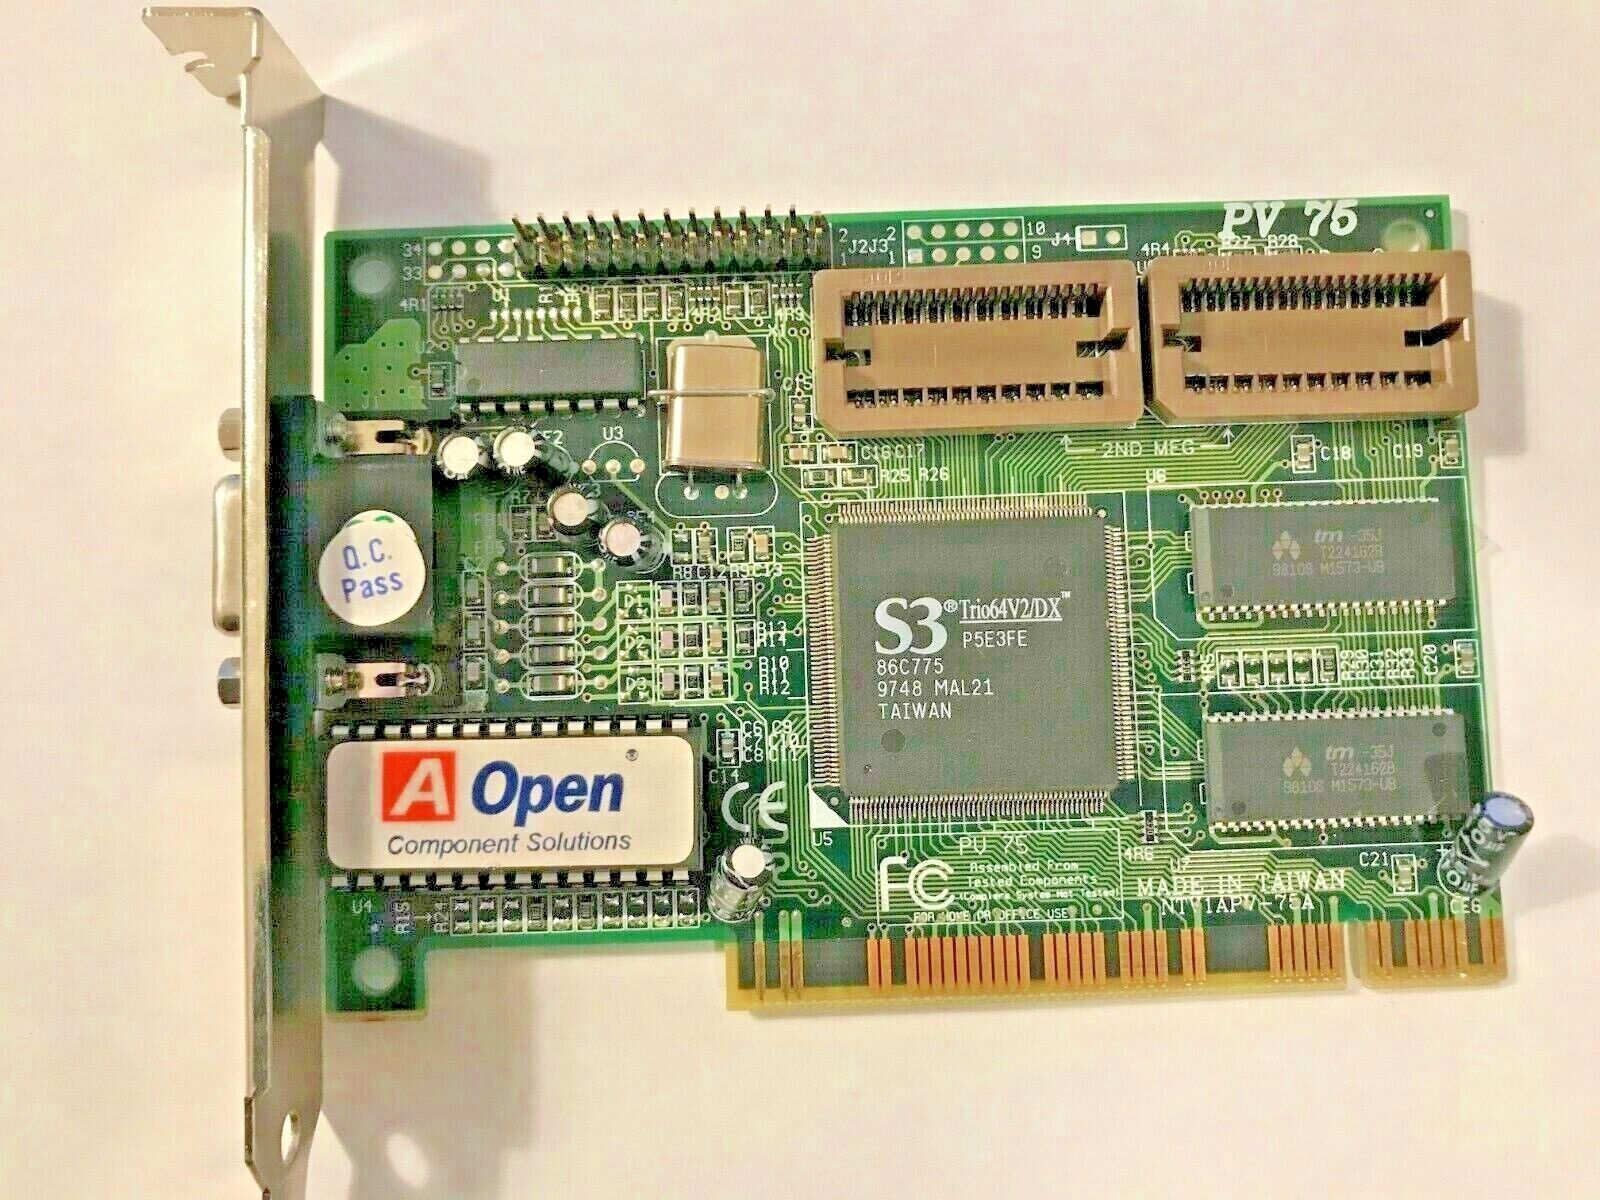 AOPEN  PV75 S3 TRIO64V/DX 86C775 1MB EXP 2M PCI VGA CARD PN  91.AC819.103 MXB2